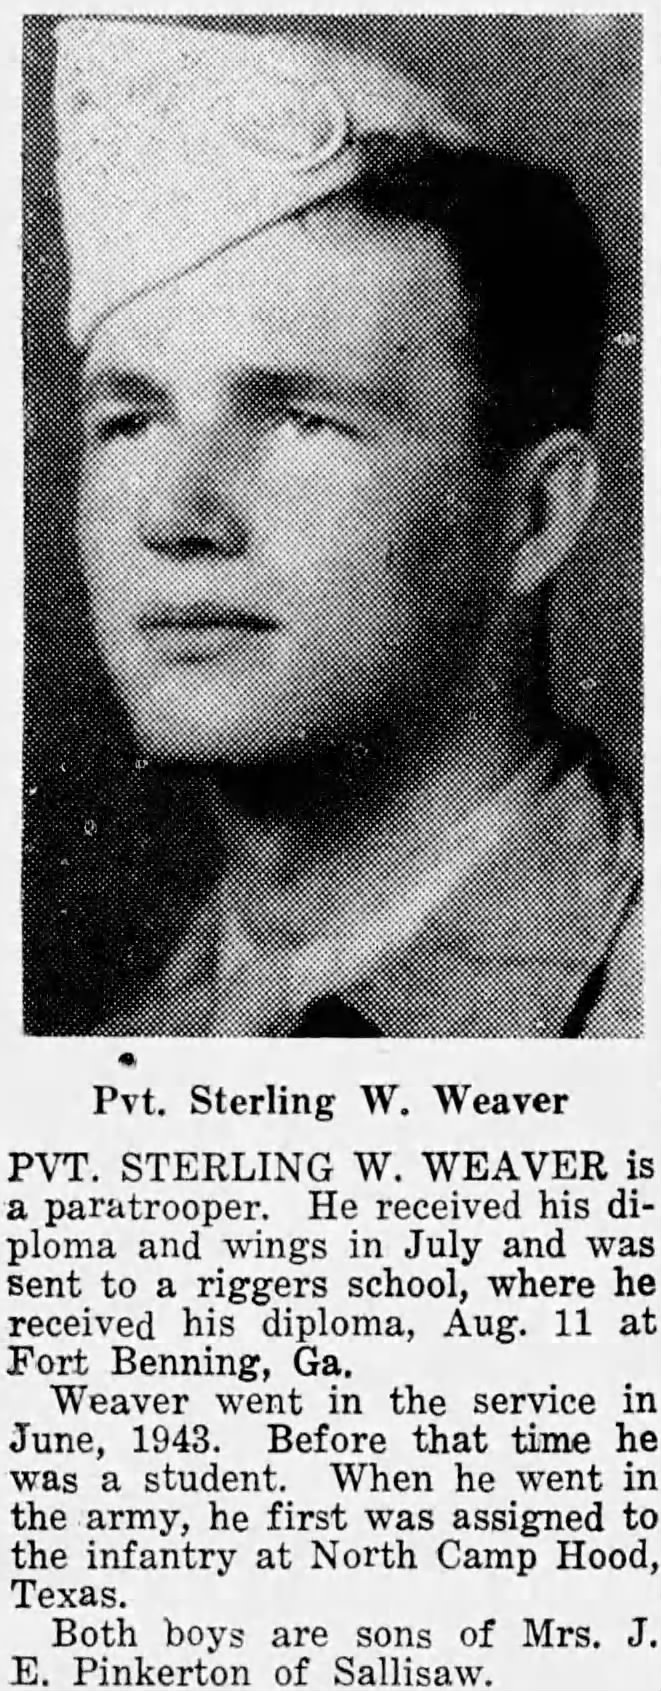 Sterling Wallace Weaver